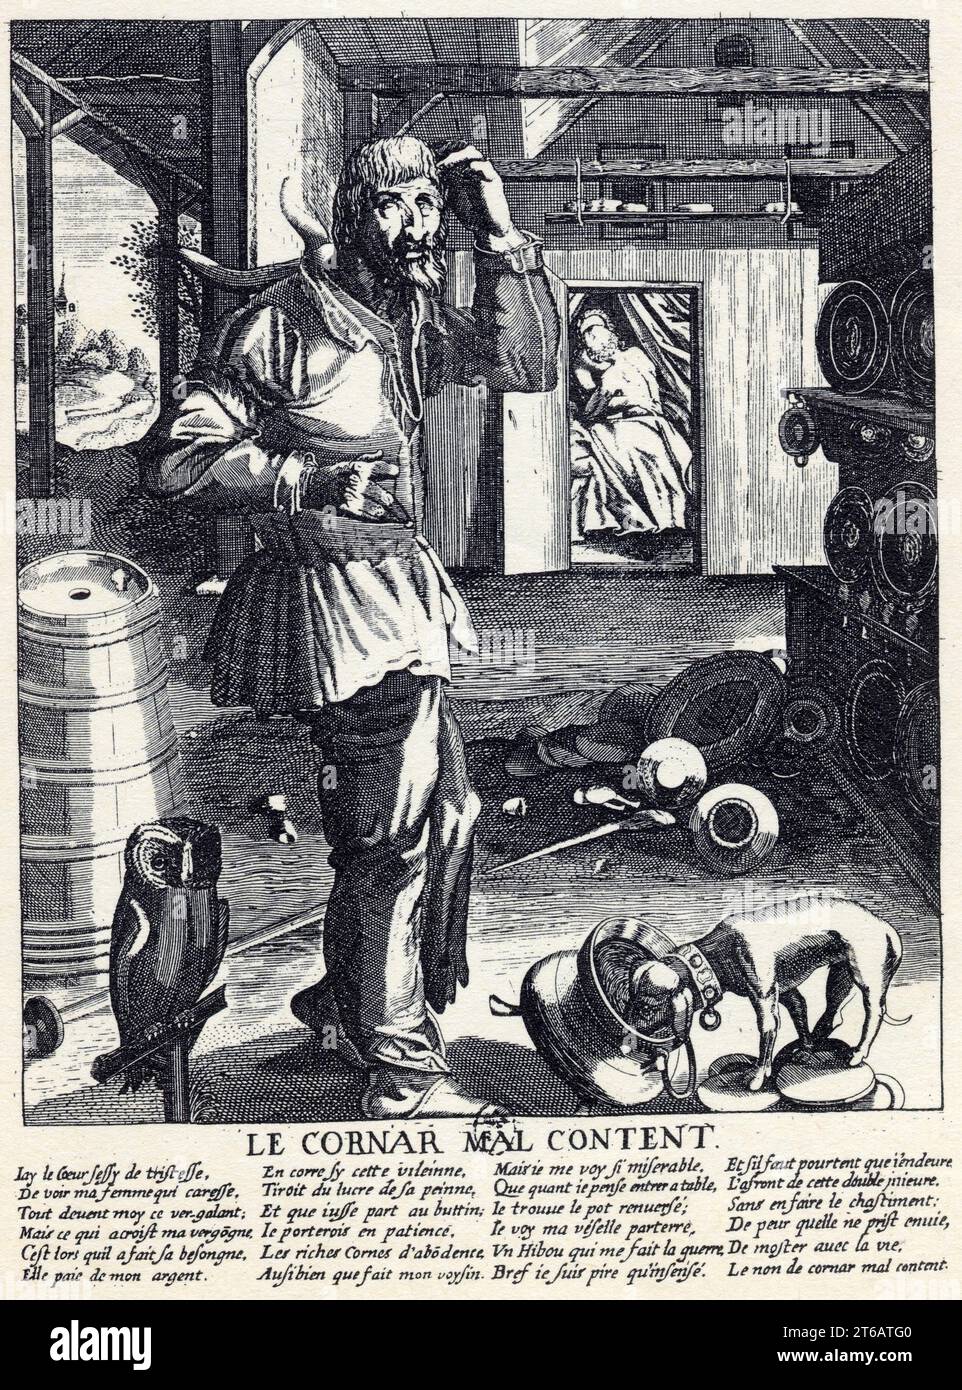 Le Cornard malcontent. Gravure du XVII ème siècle. Stock Photo